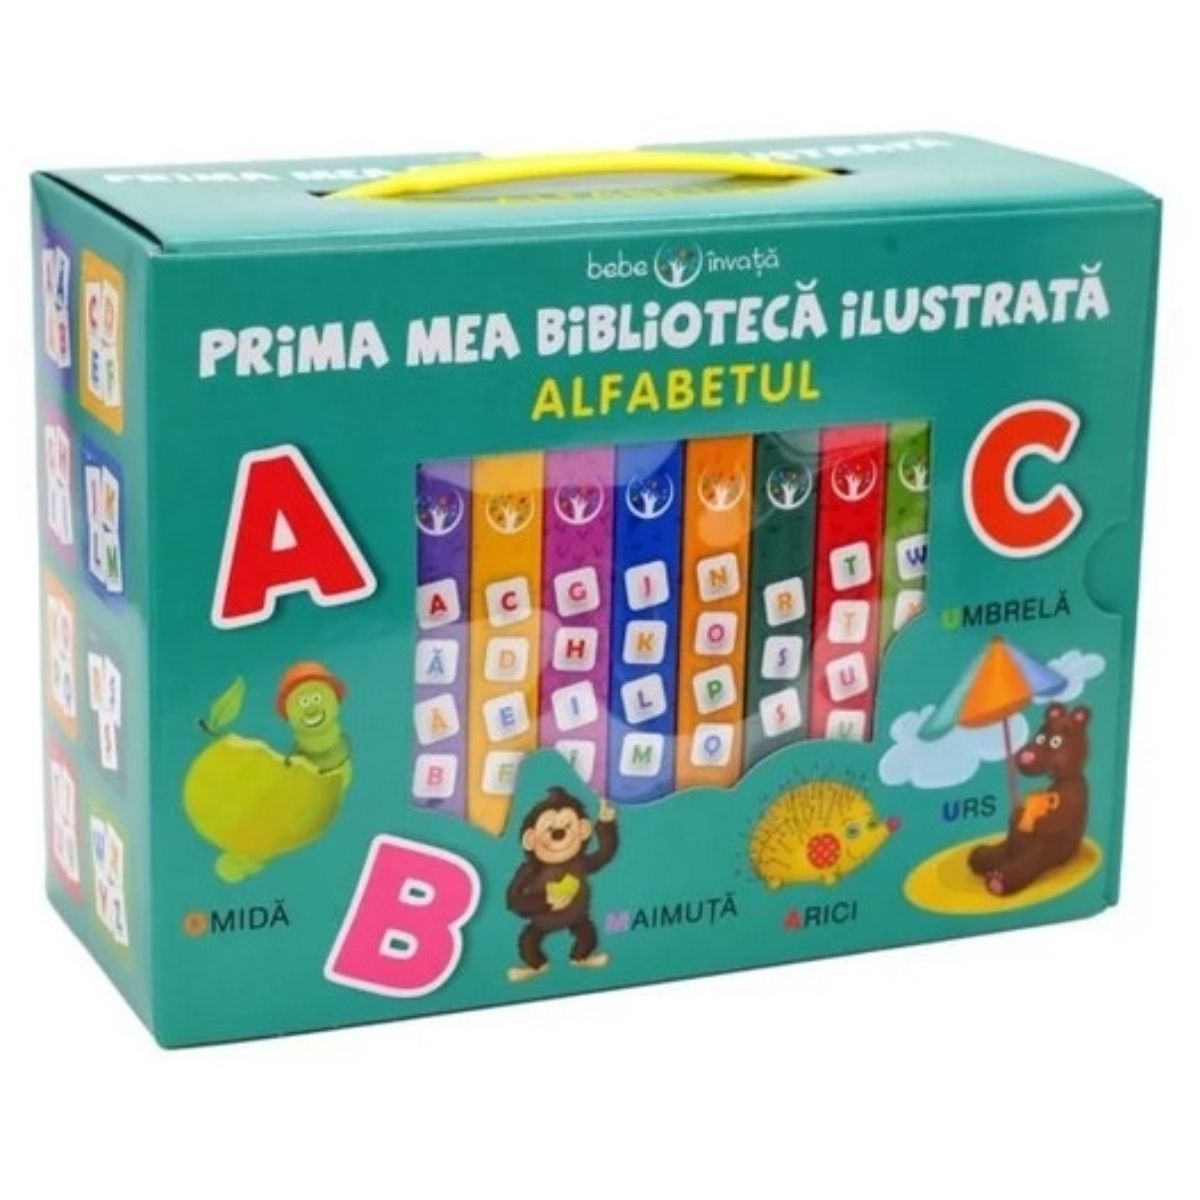 Bebe invata, Prima mea biblioteca ilustrata, Alfabetul (cutie 8 carticele)